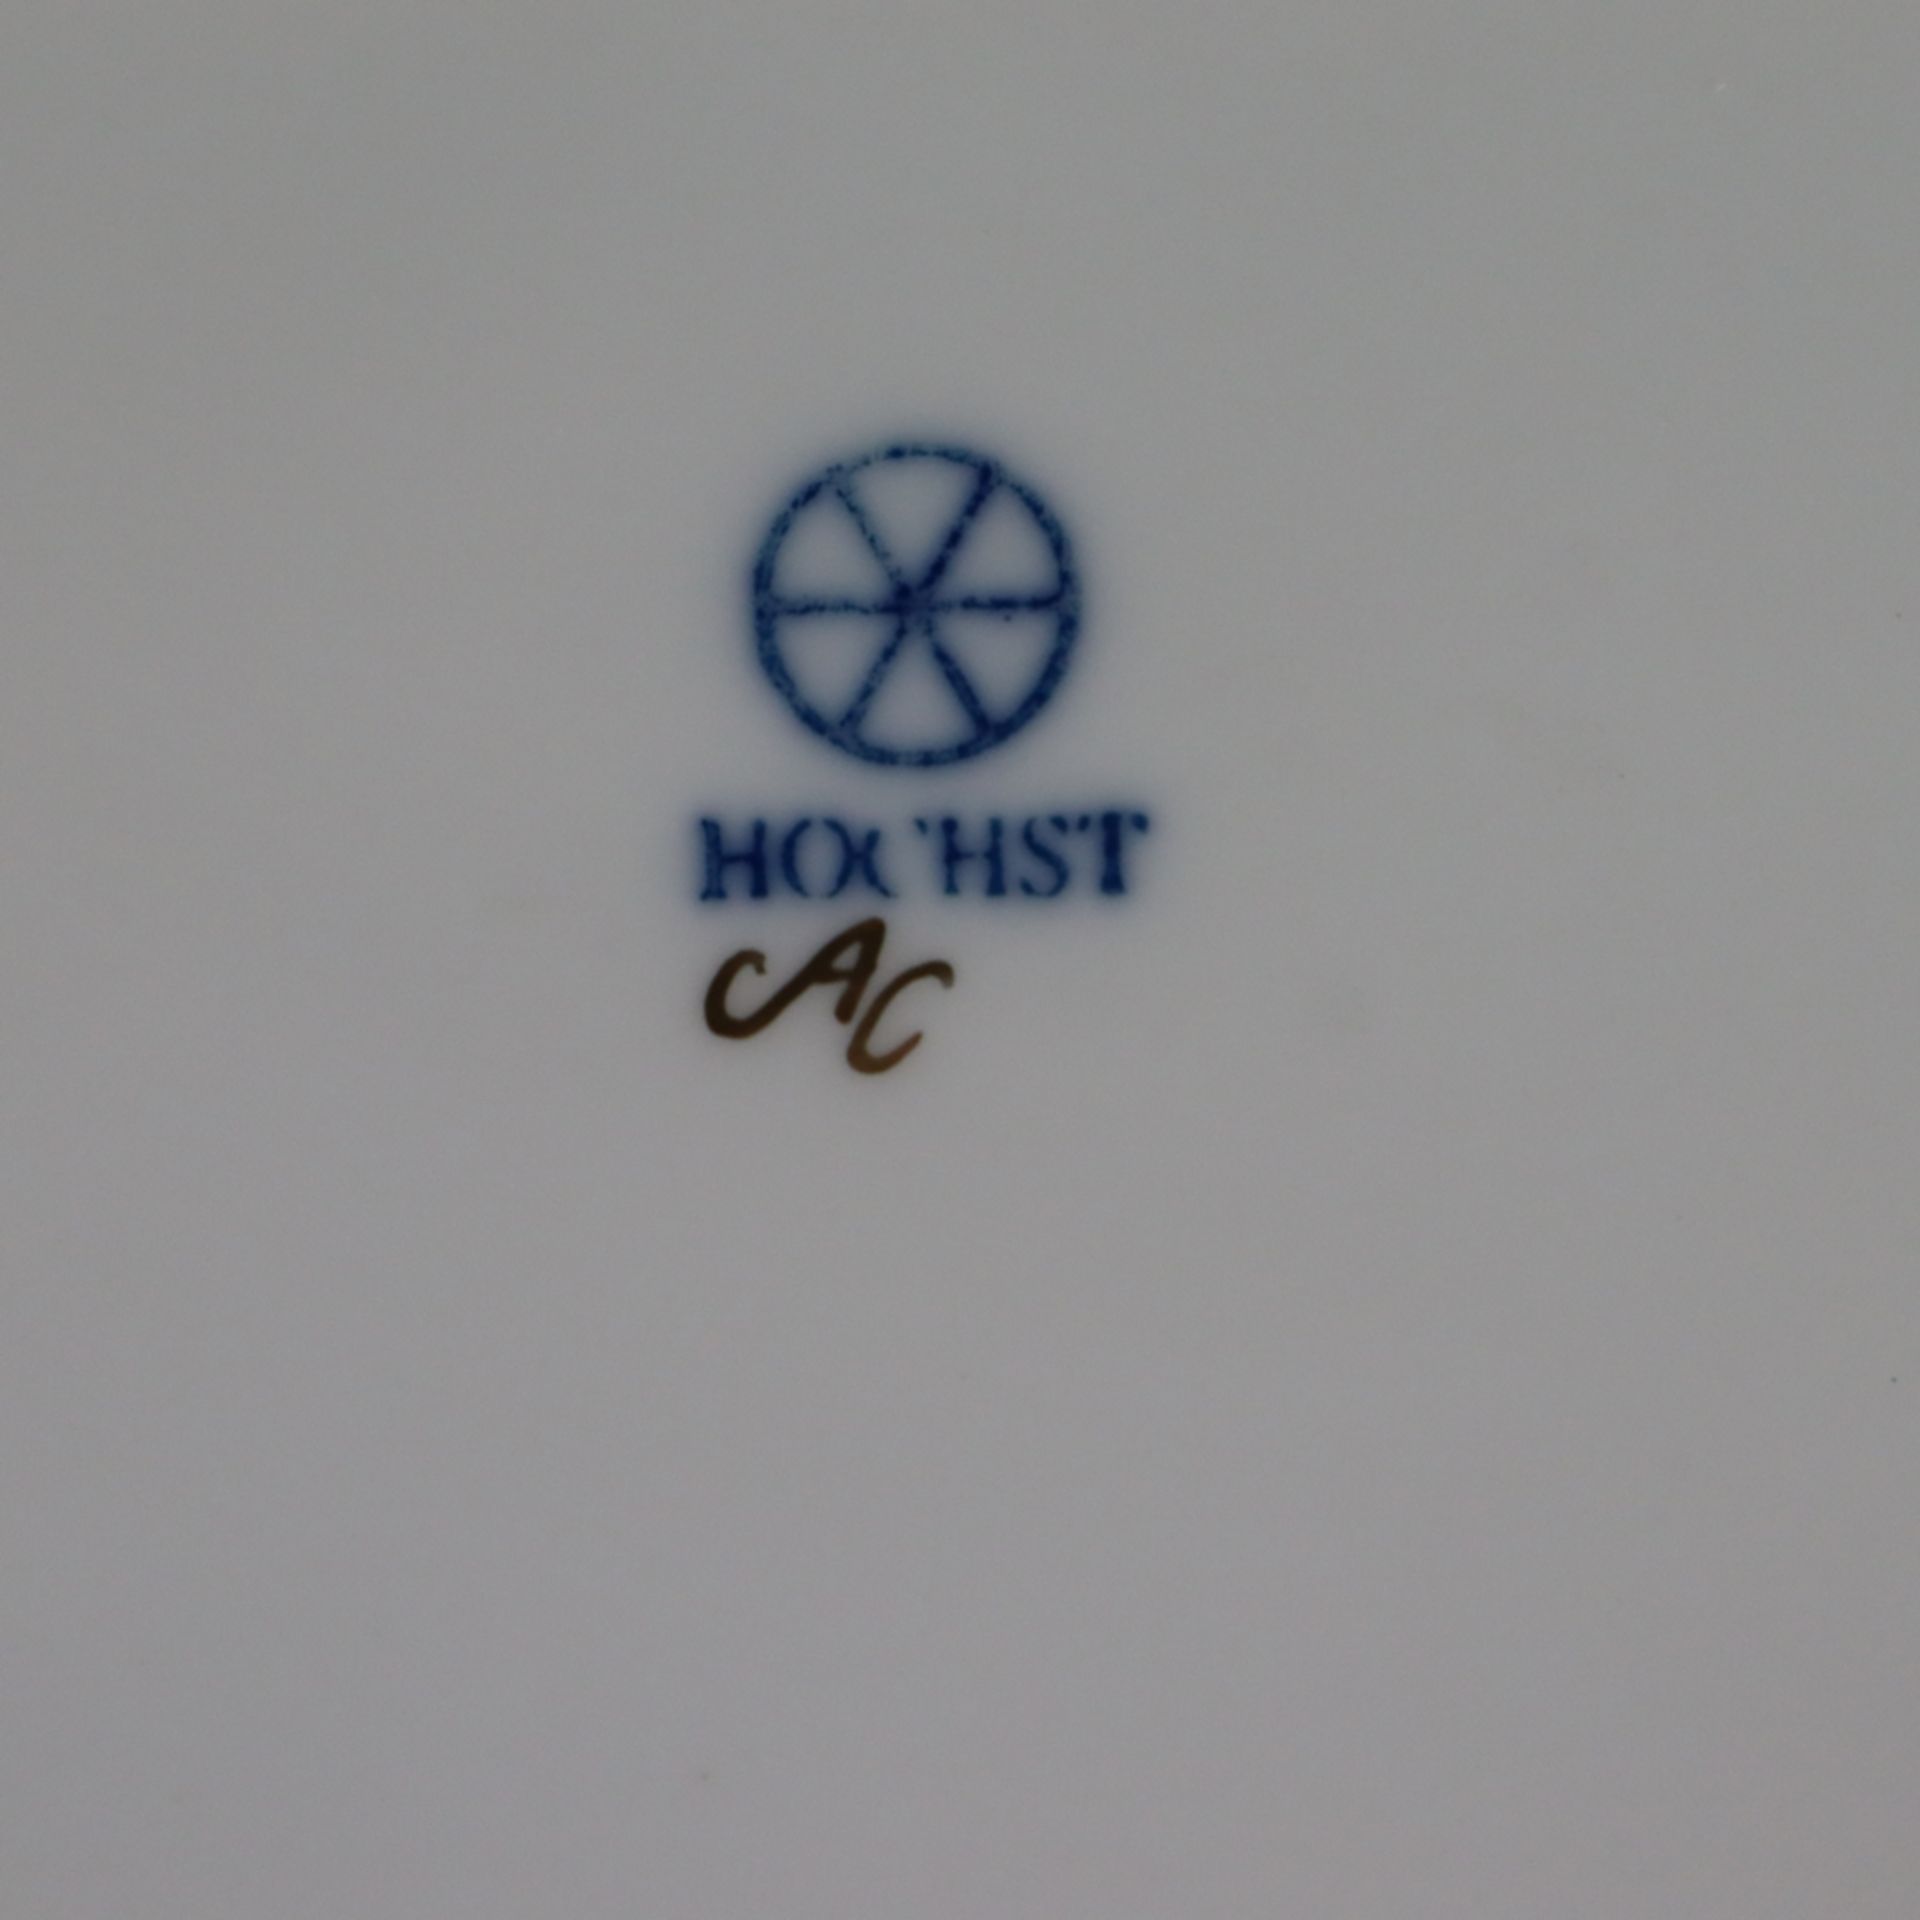 Deckeldose - Hoechst, blaue Radmarke, in Gold bez. "AC", im Spiegel polychromer Schmetterlingsdekor, - Bild 3 aus 3